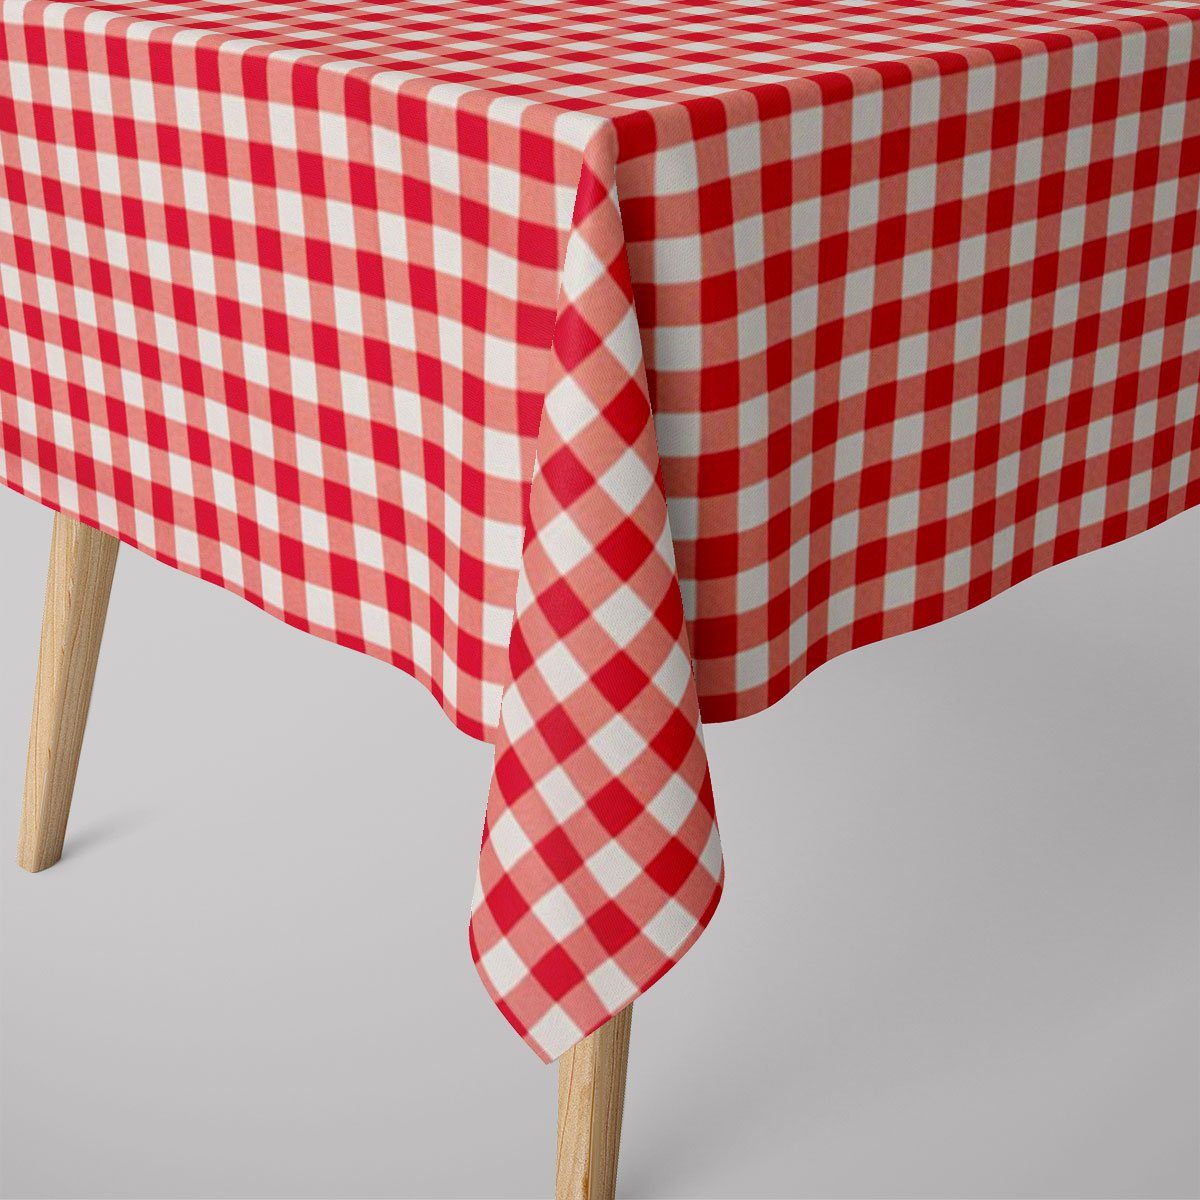 SCHÖNER LEBEN. Tischdecke Tischdecke abwaschbar Karo rot weiß div. Größen von SCHÖNER LEBEN., abwaschbar | Tischdecken